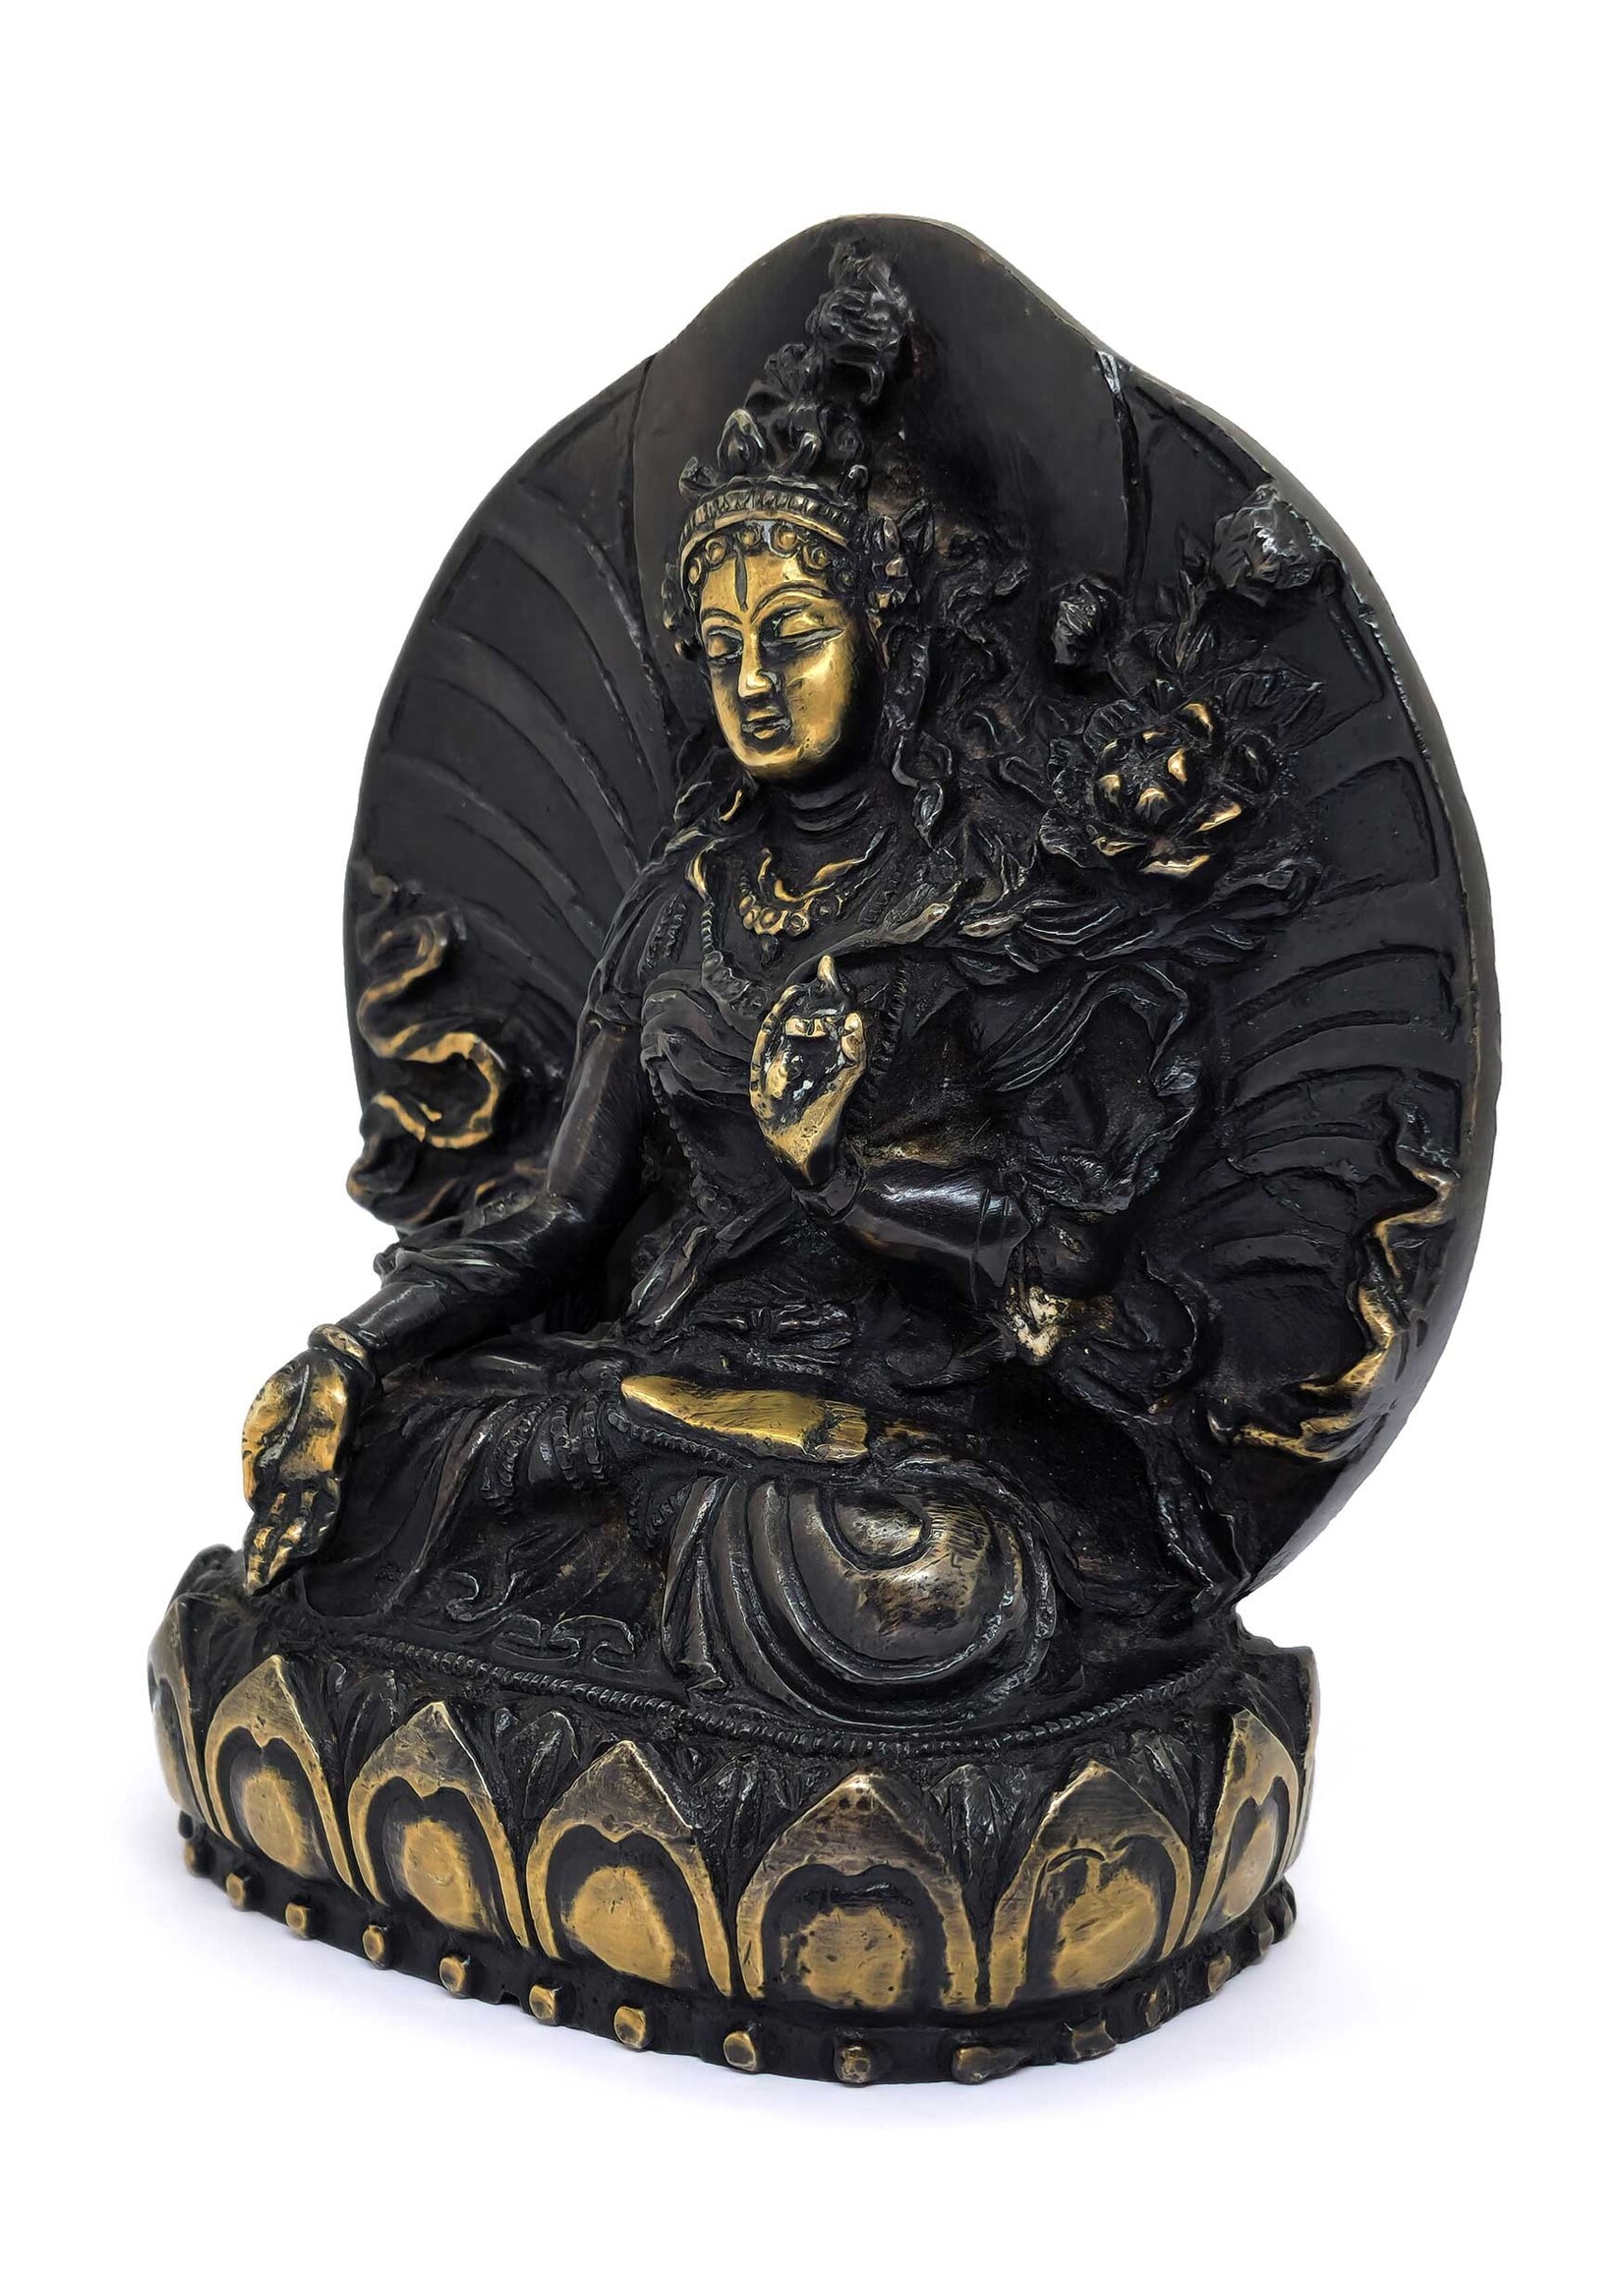 Handgefertigte tibetische Weisse Tara-Statue aus hochwertigem Messing, 14.5 cm